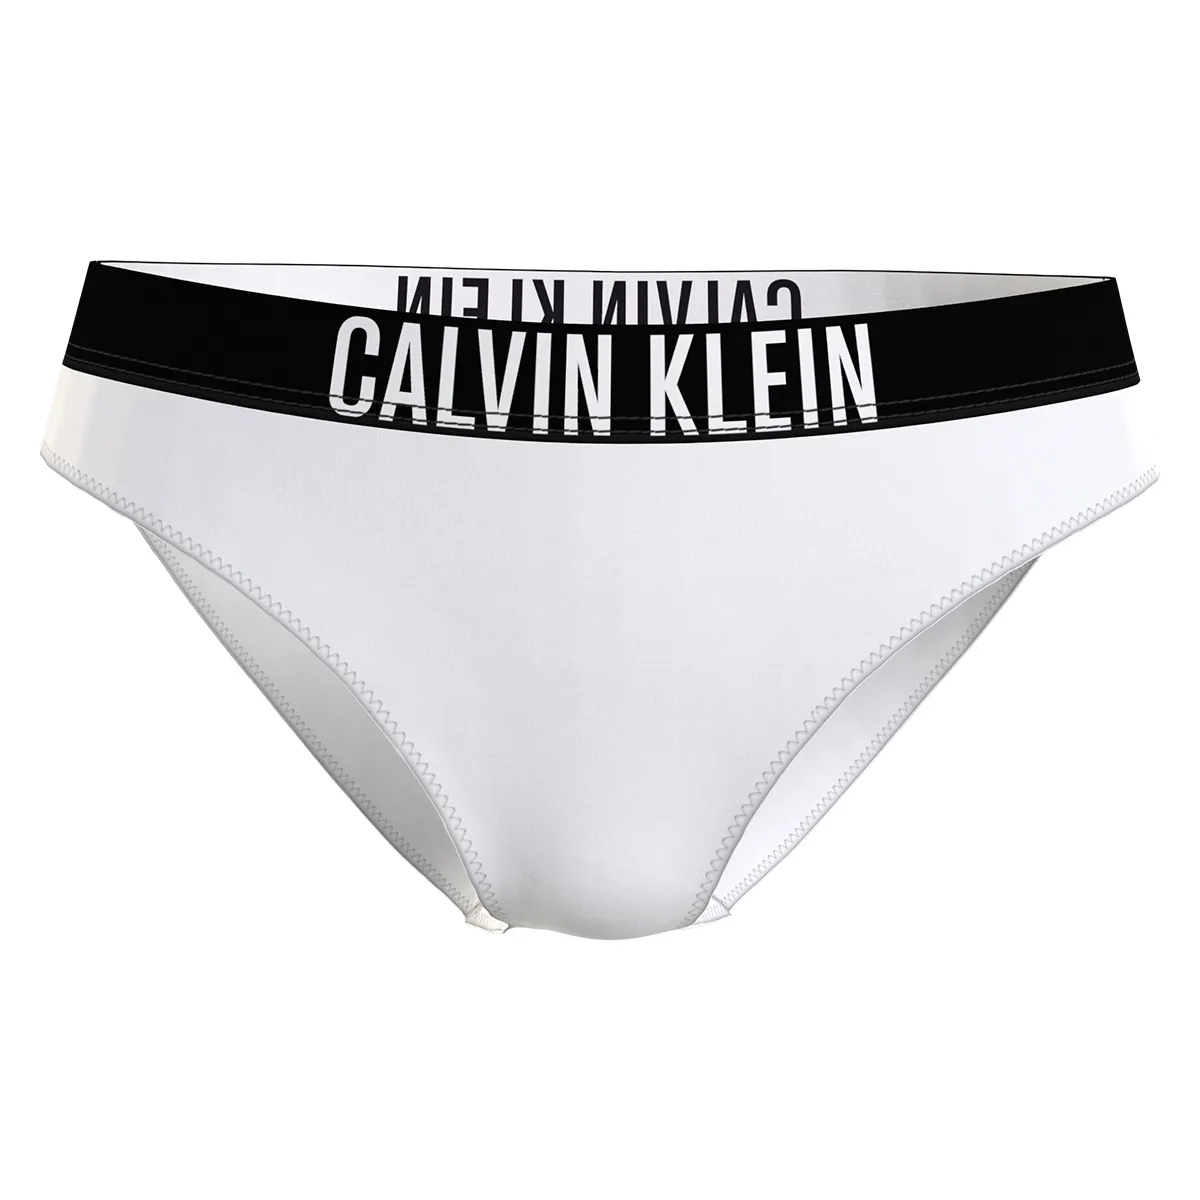 At sige sandheden udstilling dæk Calvin Klein tilbud | Kæmpe udvalg og billige priser her